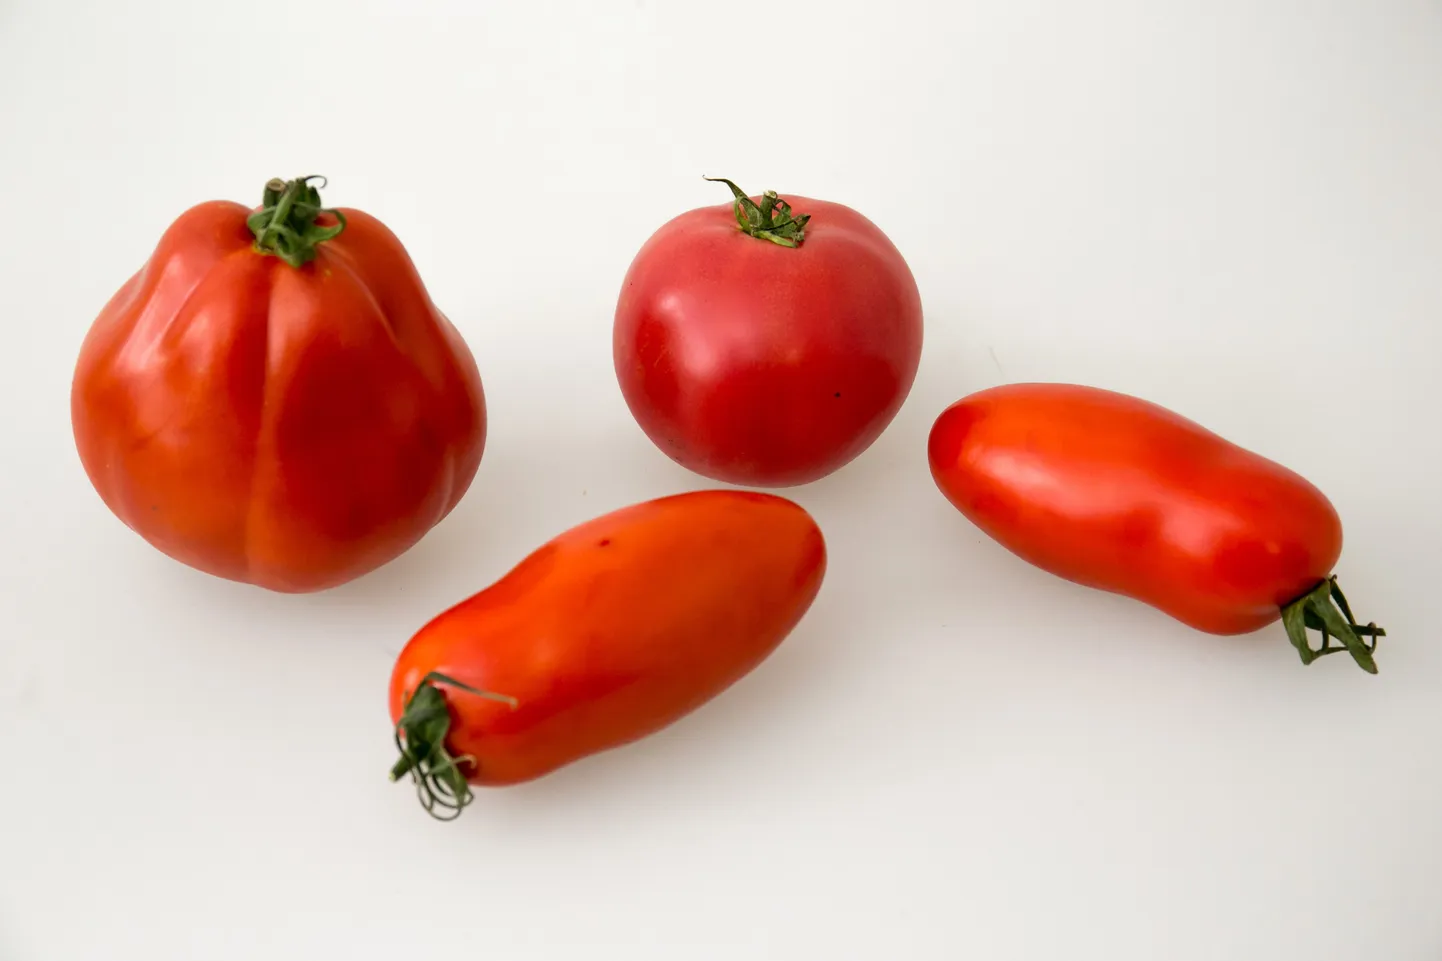 На фото помидоры сорта "Гурман", помидоры черри и два перцевидных томата.